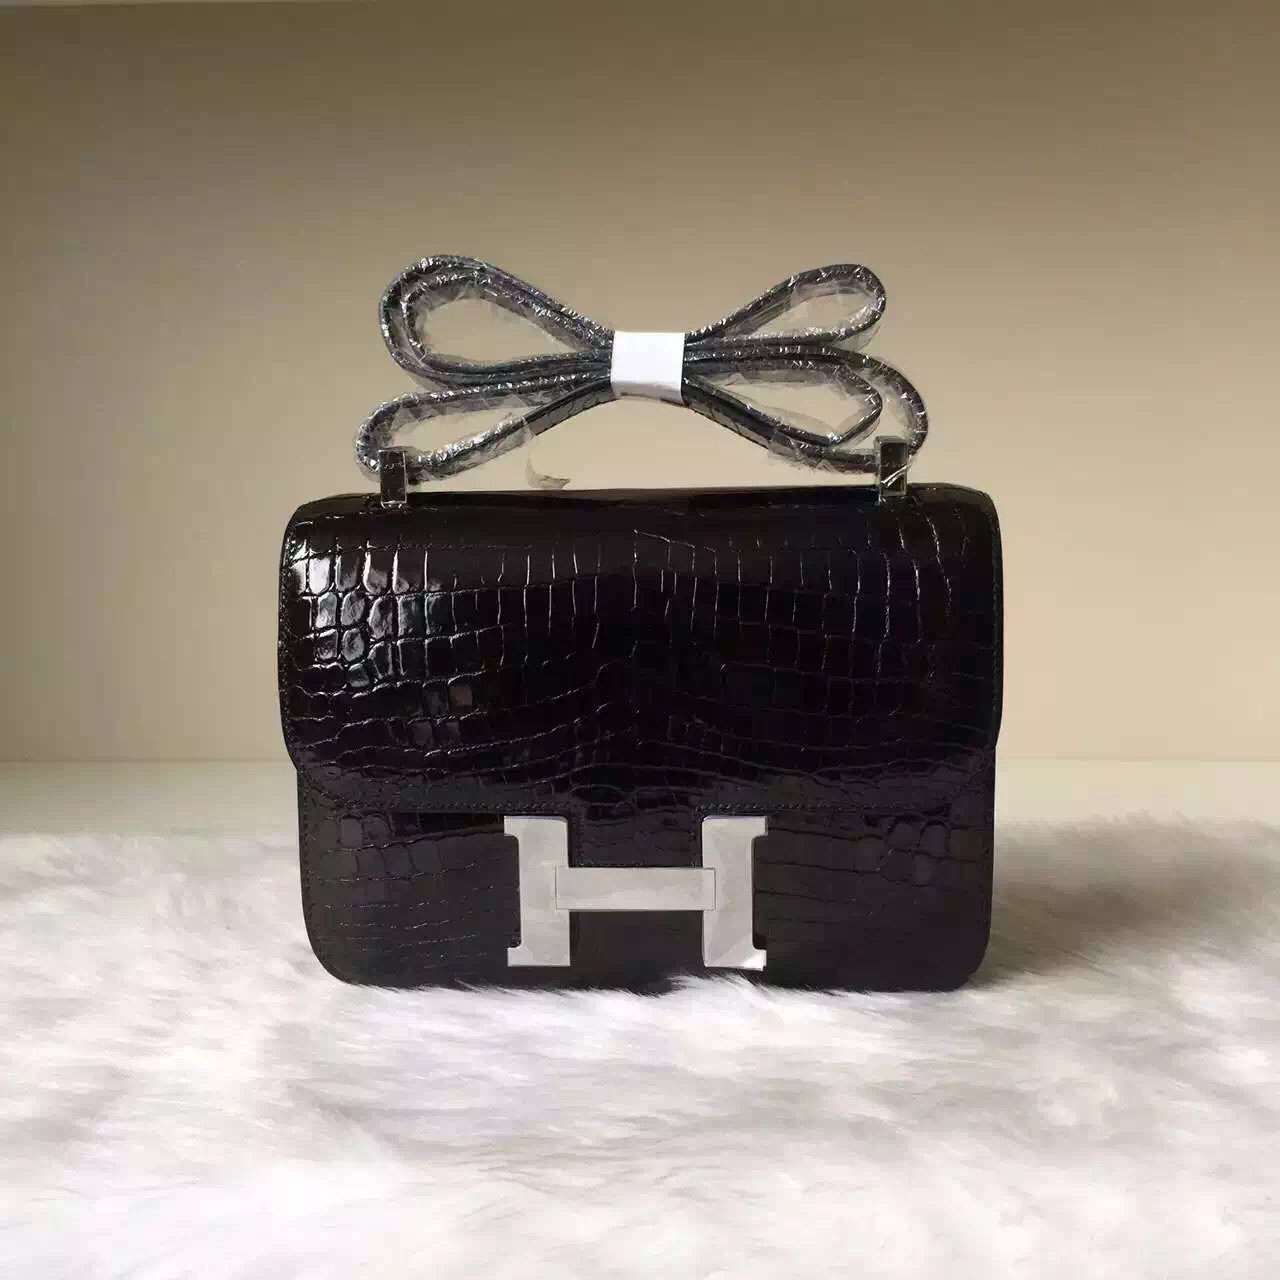 New Elegant Hermes CK89 Black Crocodile Leather Constance Bag24CM